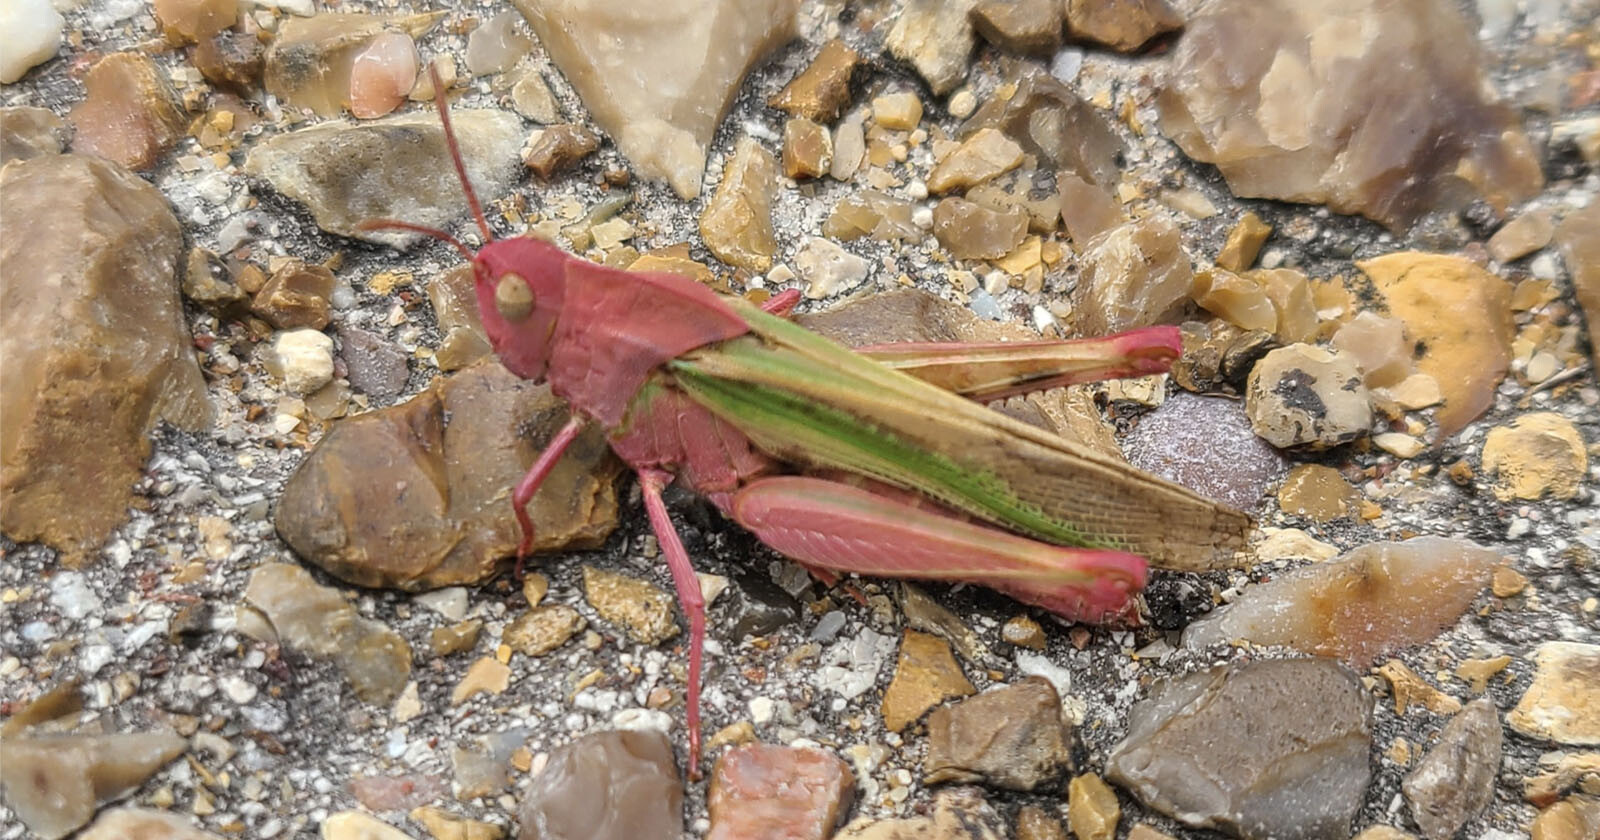  park ranger finds rare pink grasshopper texas 